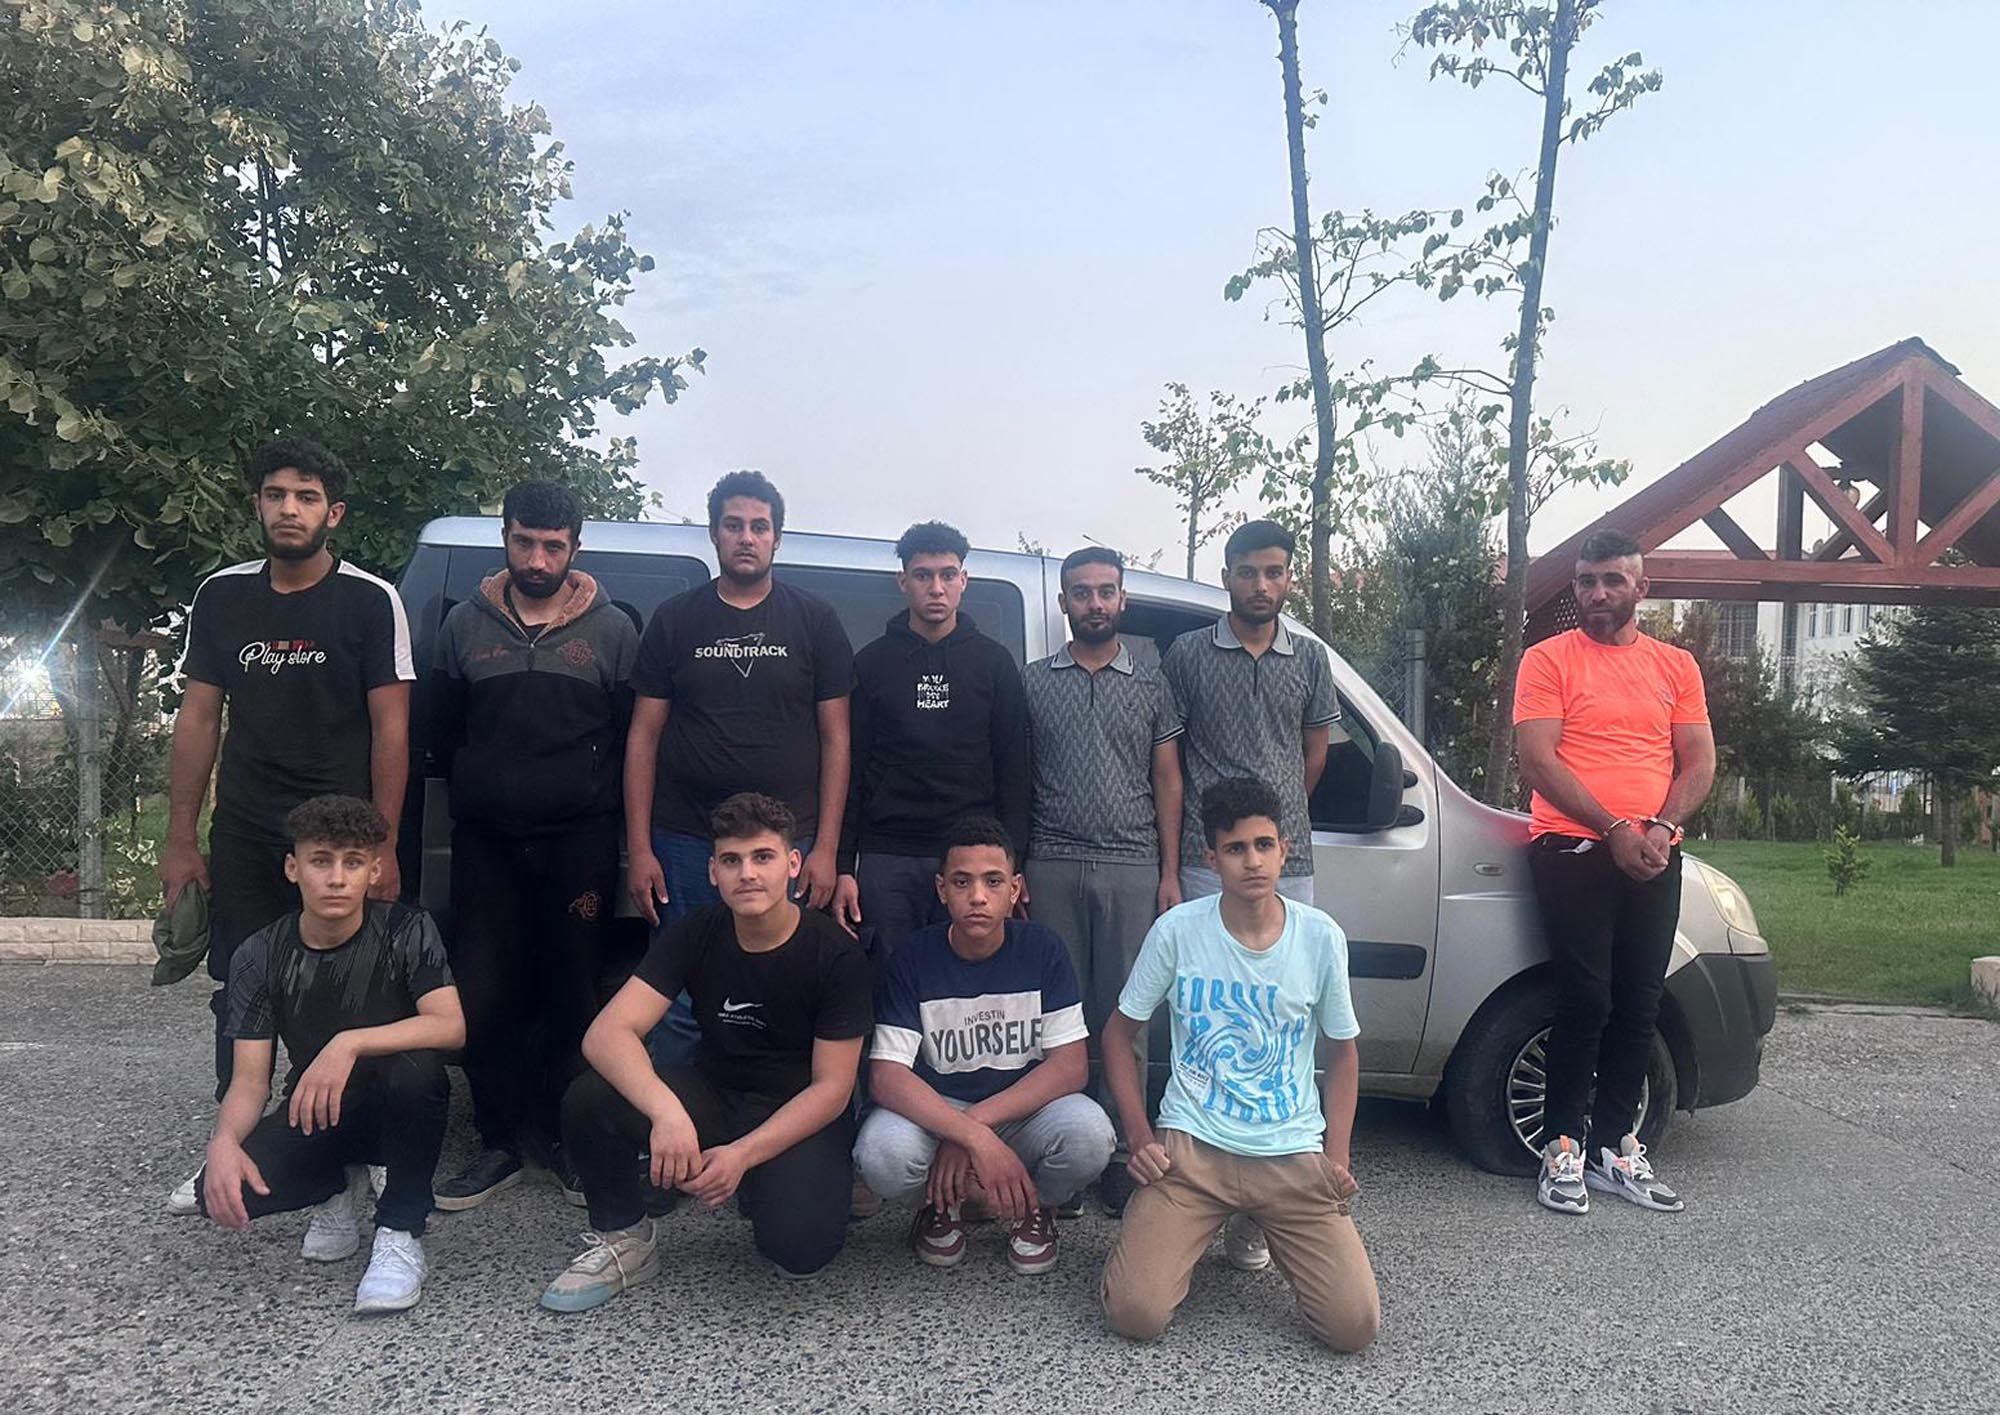 Tekirdağ'da 10 kaçak göçmen ile 1 organizatör yakalandı